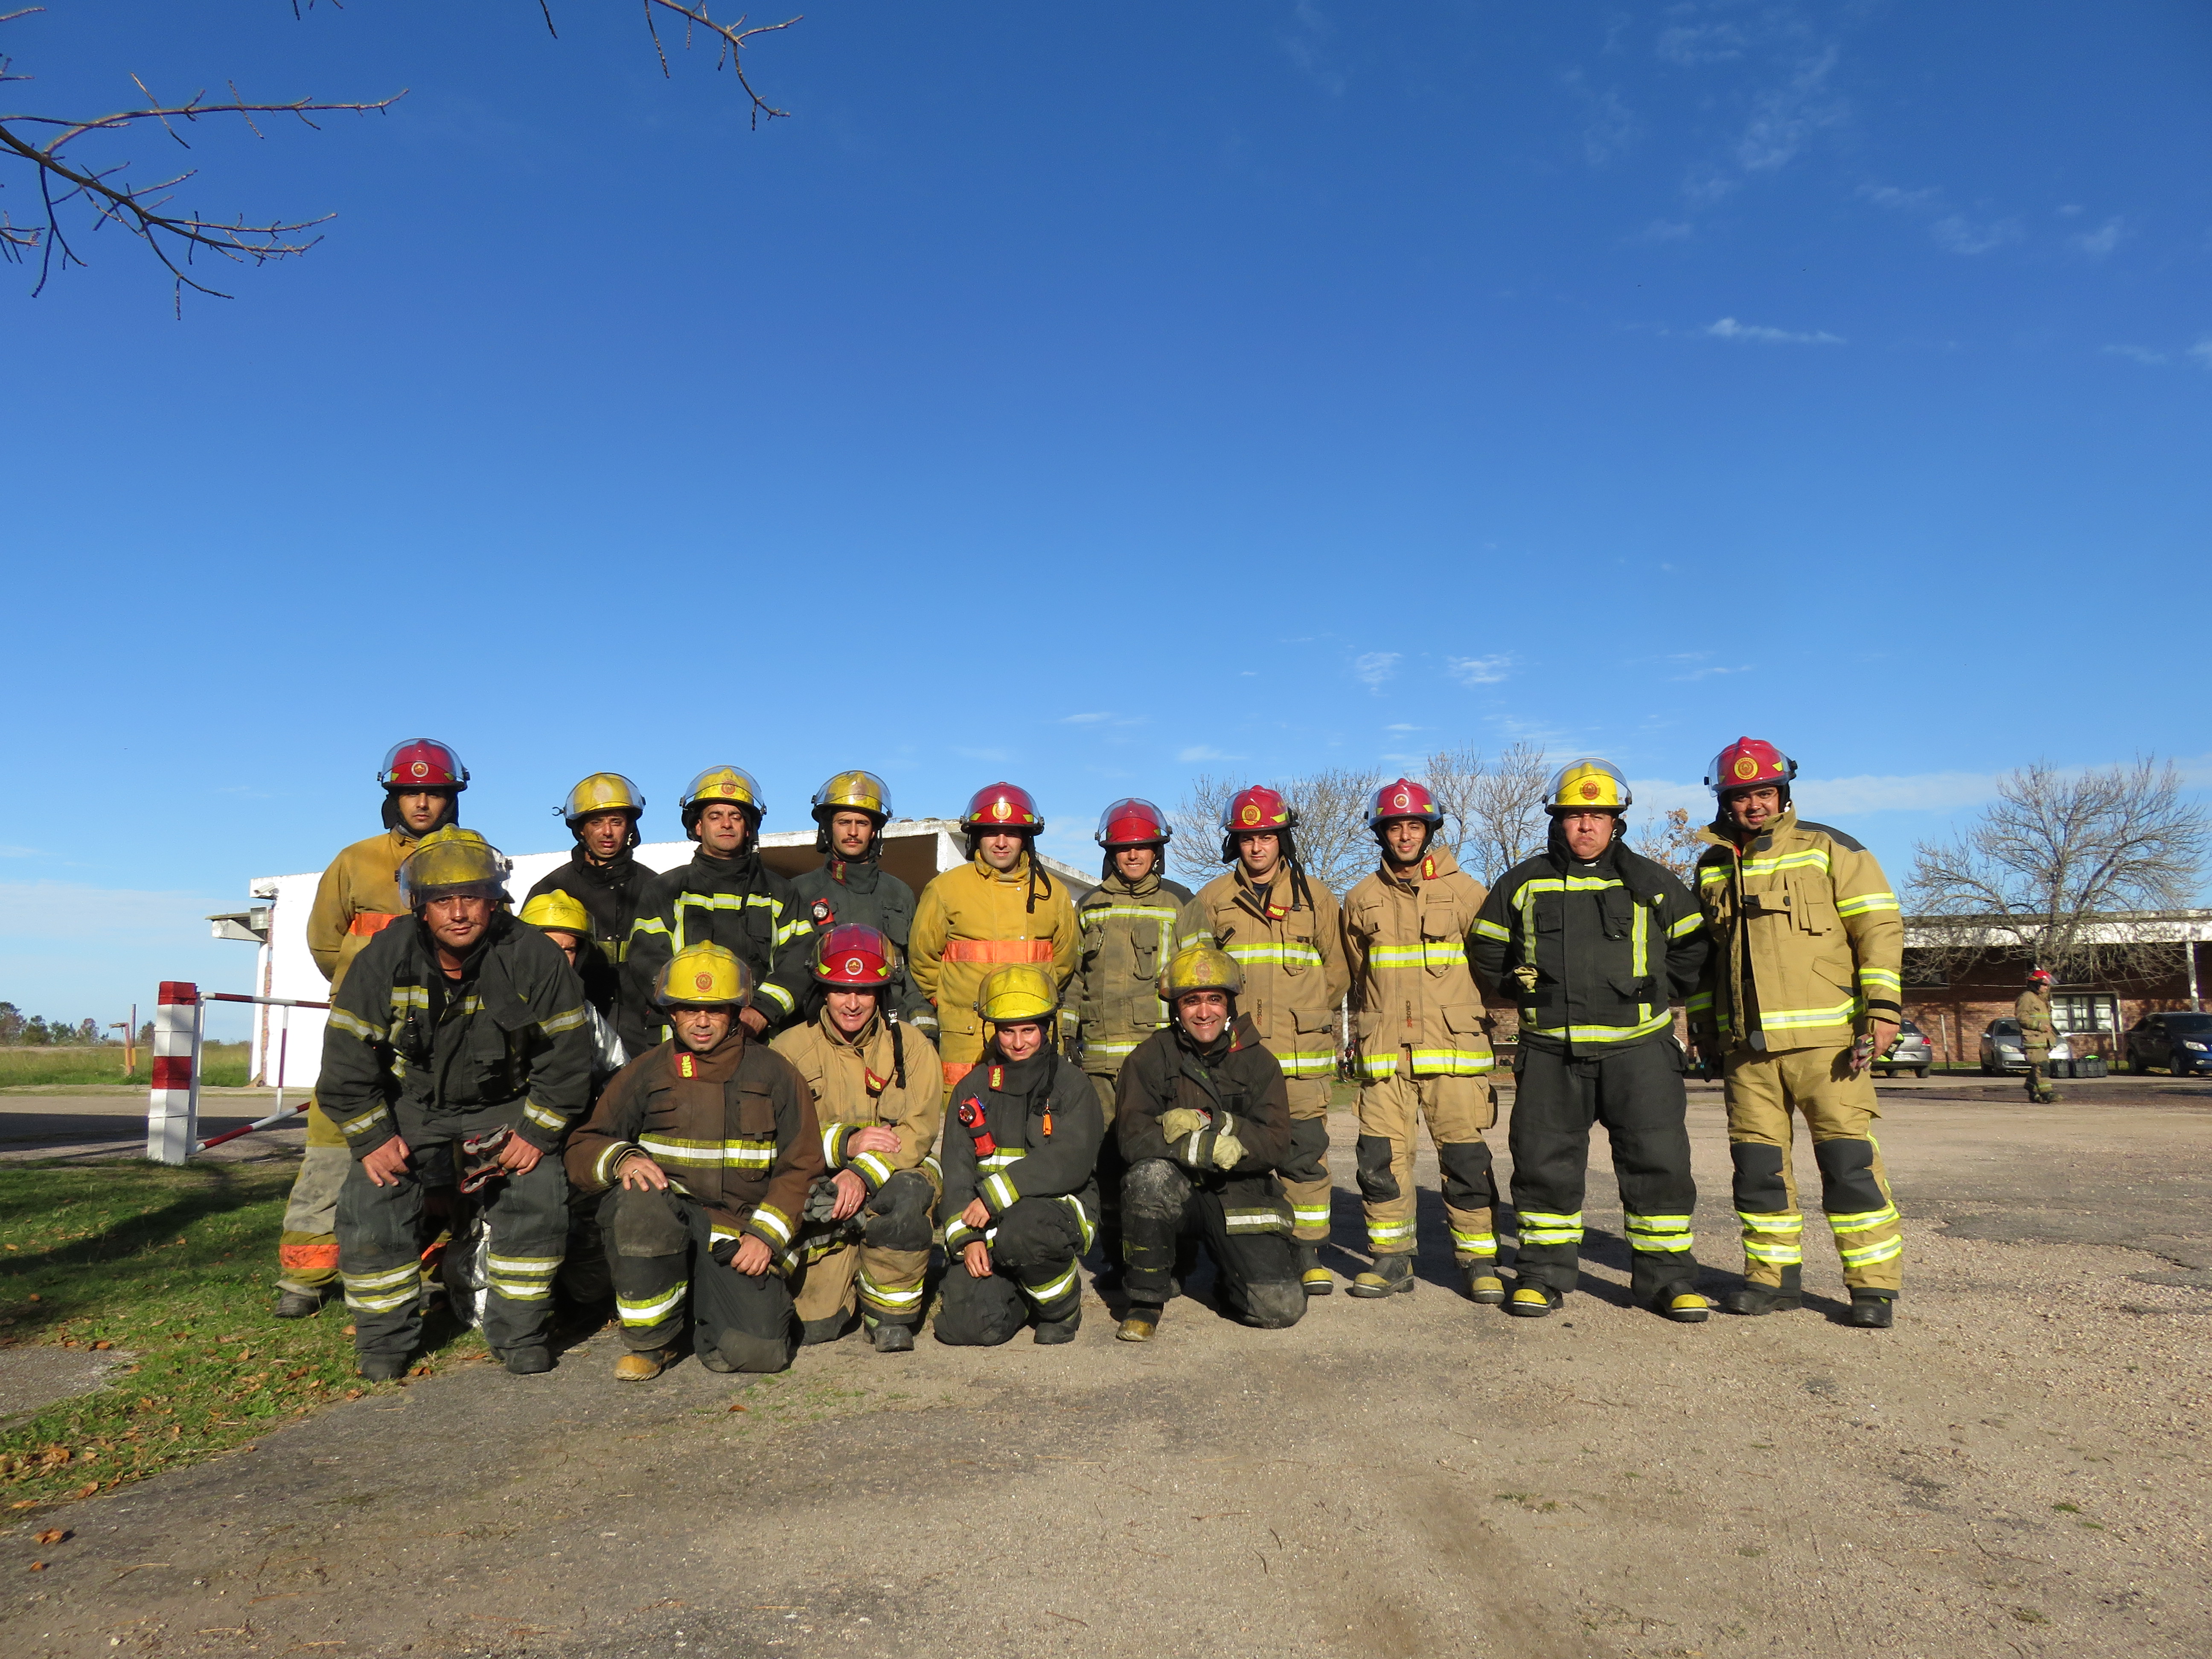 IMG_20230511_3922.jpg - El pasado jueves 11 de mayo culminó la &#034;Capacitación para bomberos sobre manejo de incidentes relacionados con la movilidad eléctrica&#034; en donde se capacitaron a 25 bomberos en la Base Aérea de Santa Bernardina del departamento de Durazno. Esta capacitación es la continuación del primer curso regional que organizó la plataforma MOVE del Programa de la Naciones Unidas para el Medio Ambiente a finales de 2022 en Paraguay, donde participaron y se formaron dos bomberos instructores de Uruguay.